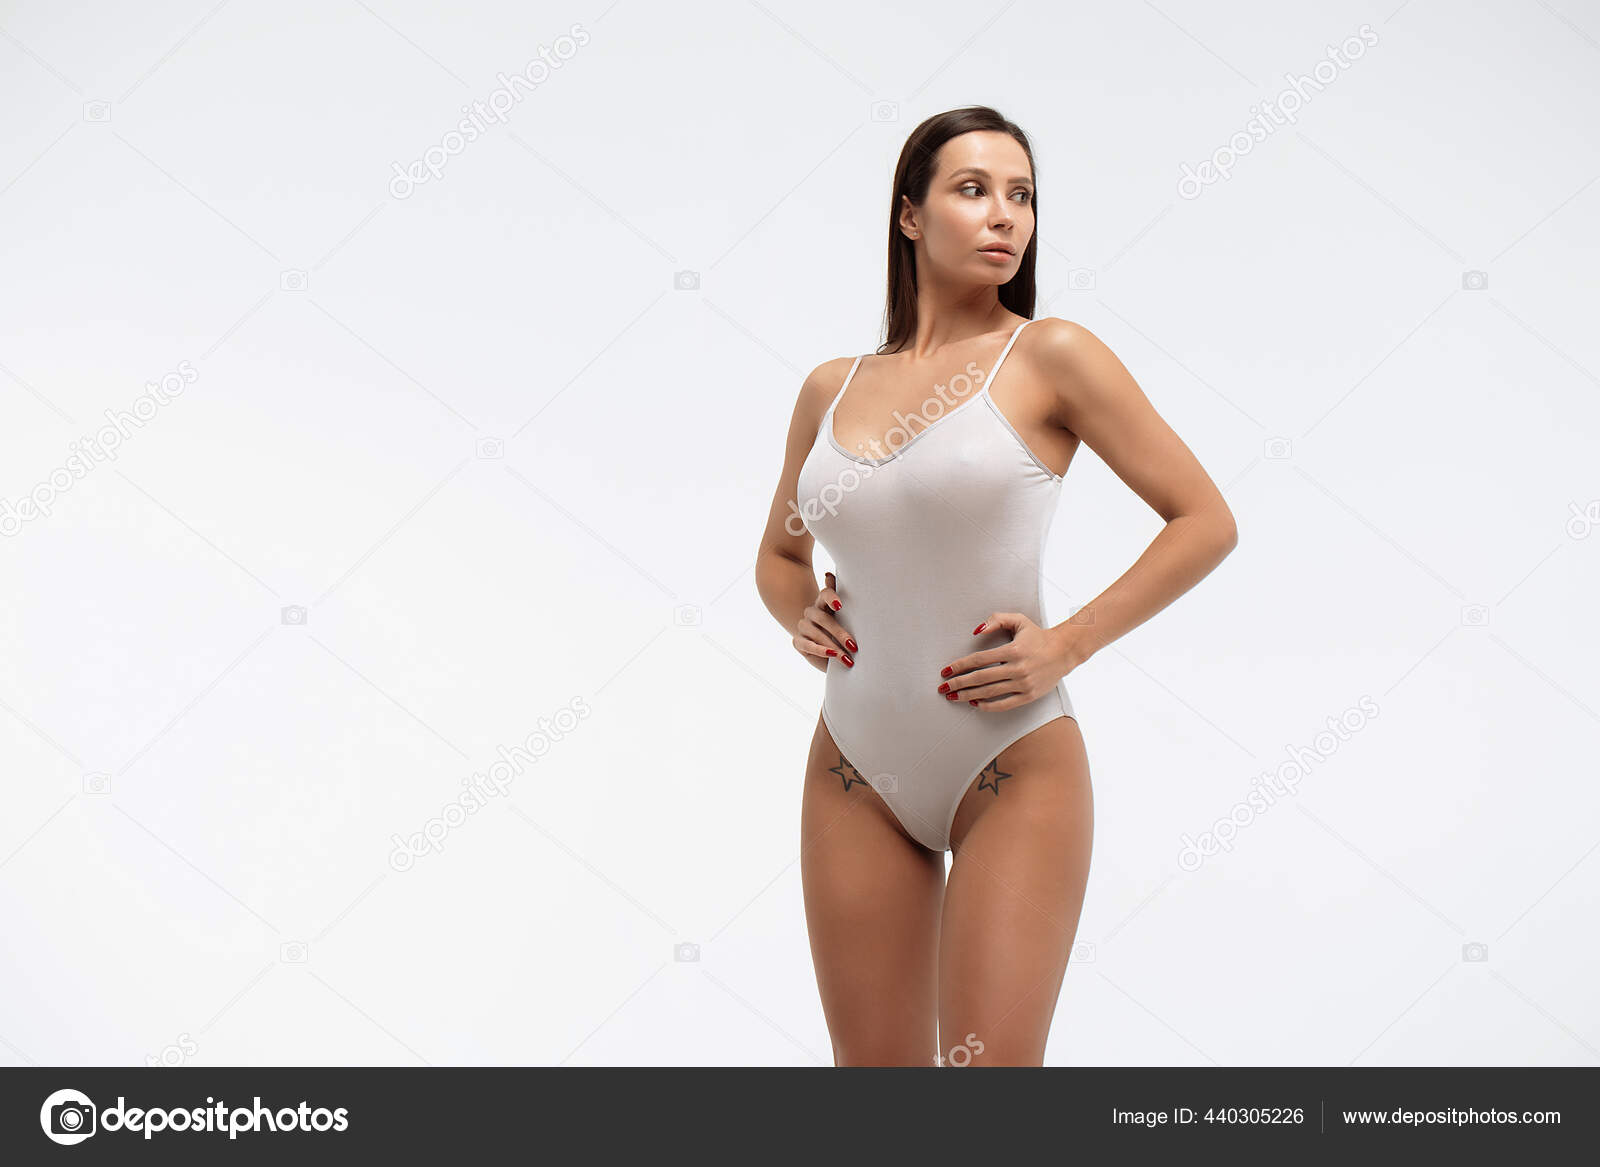 https://st2.depositphotos.com/5034975/44030/i/1600/depositphotos_440305226-stock-photo-tender-female-wearing-bodysuit-standing.jpg